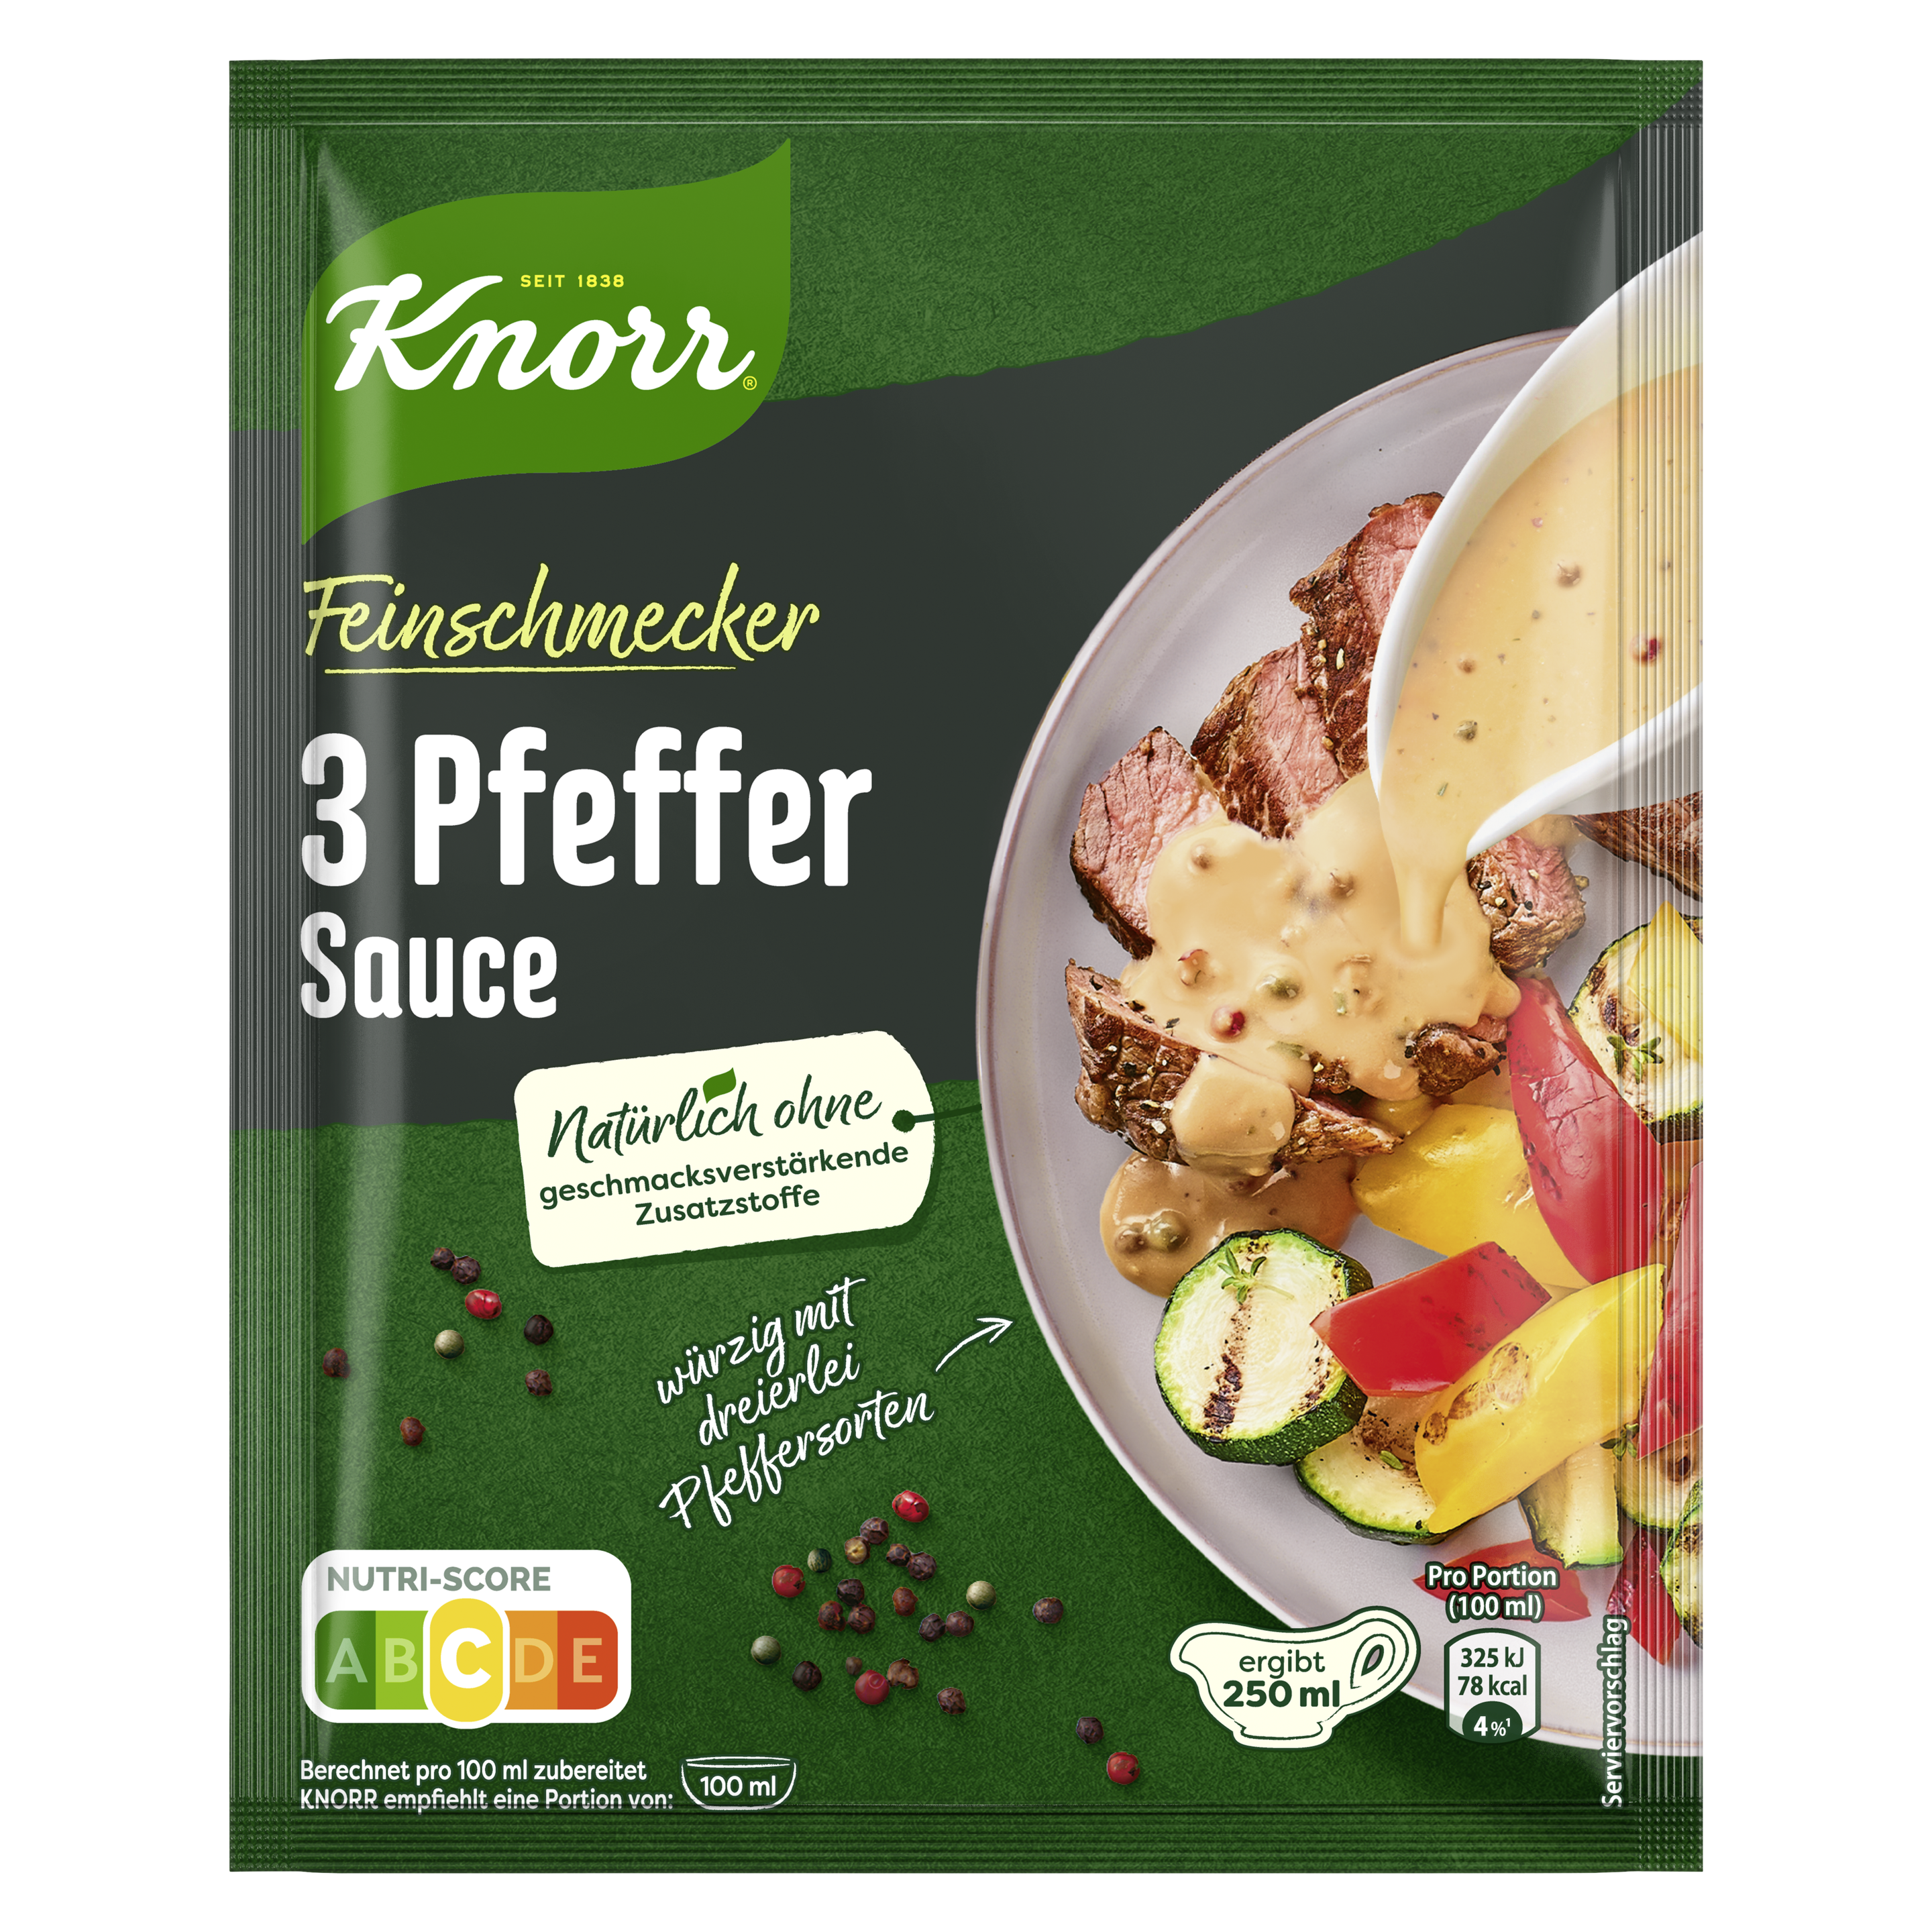 Knorr Feinschmecker 3 Pfeffer Sauce ergibt 250 ml